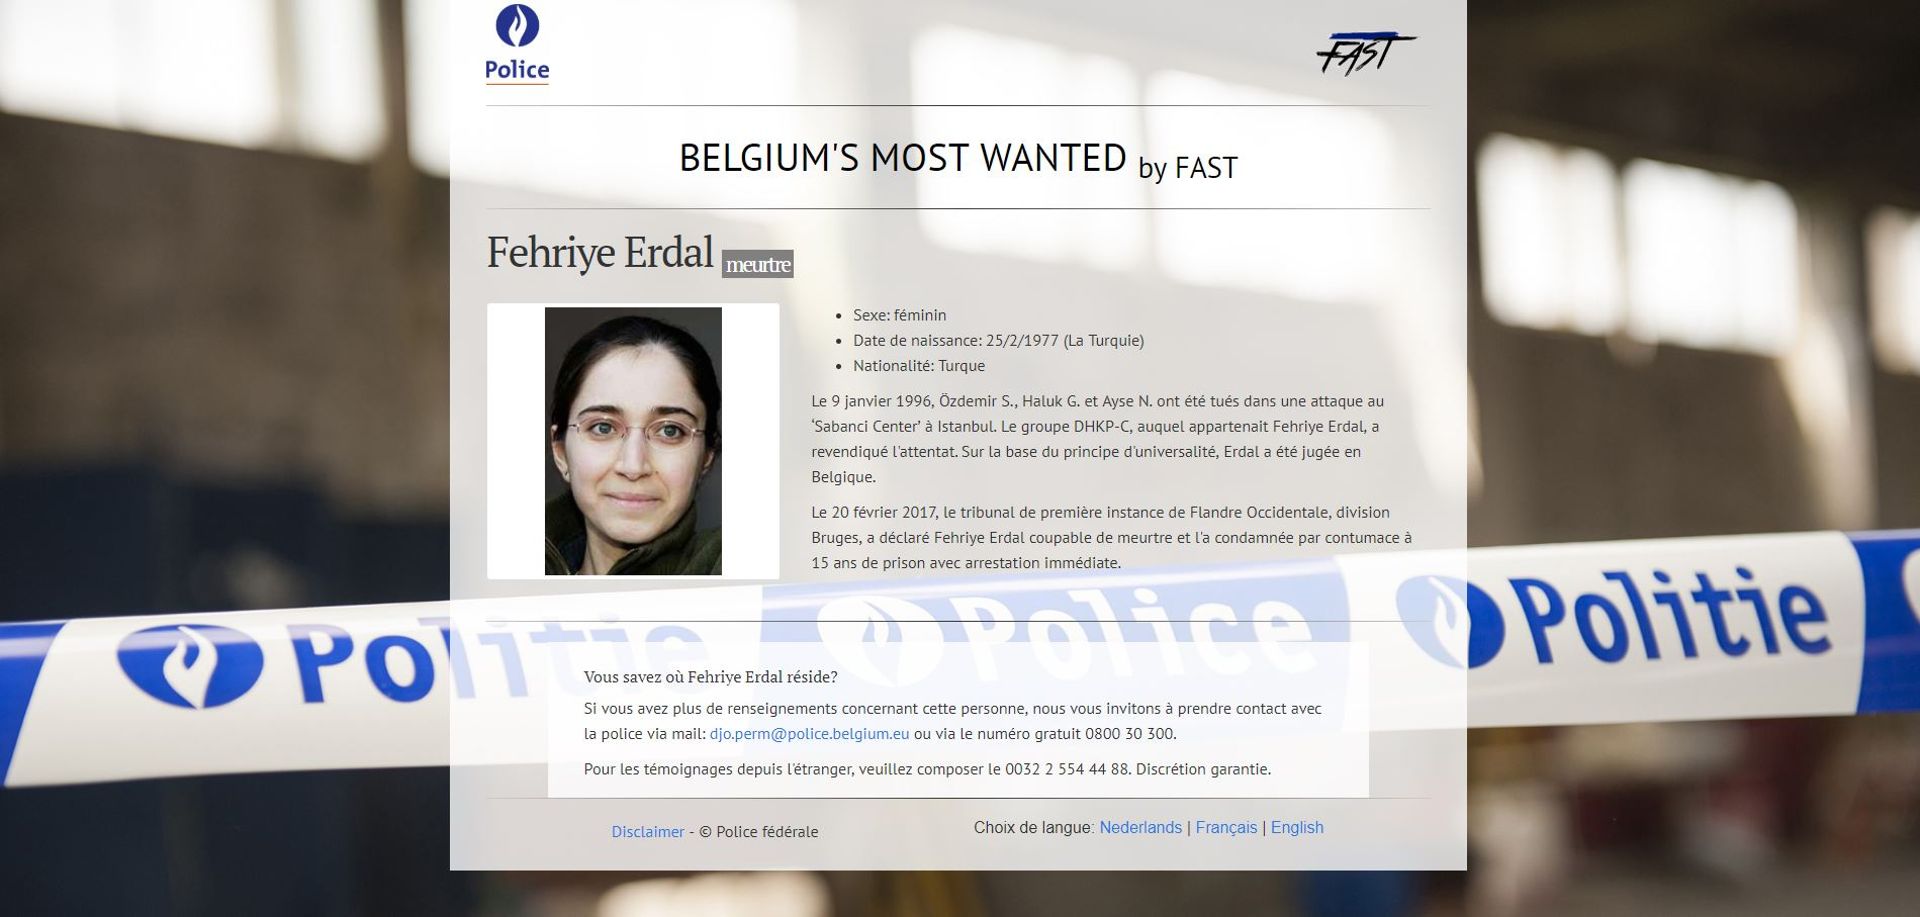 Fehryie Erdal, la femme la plus recherchée de Belgique
